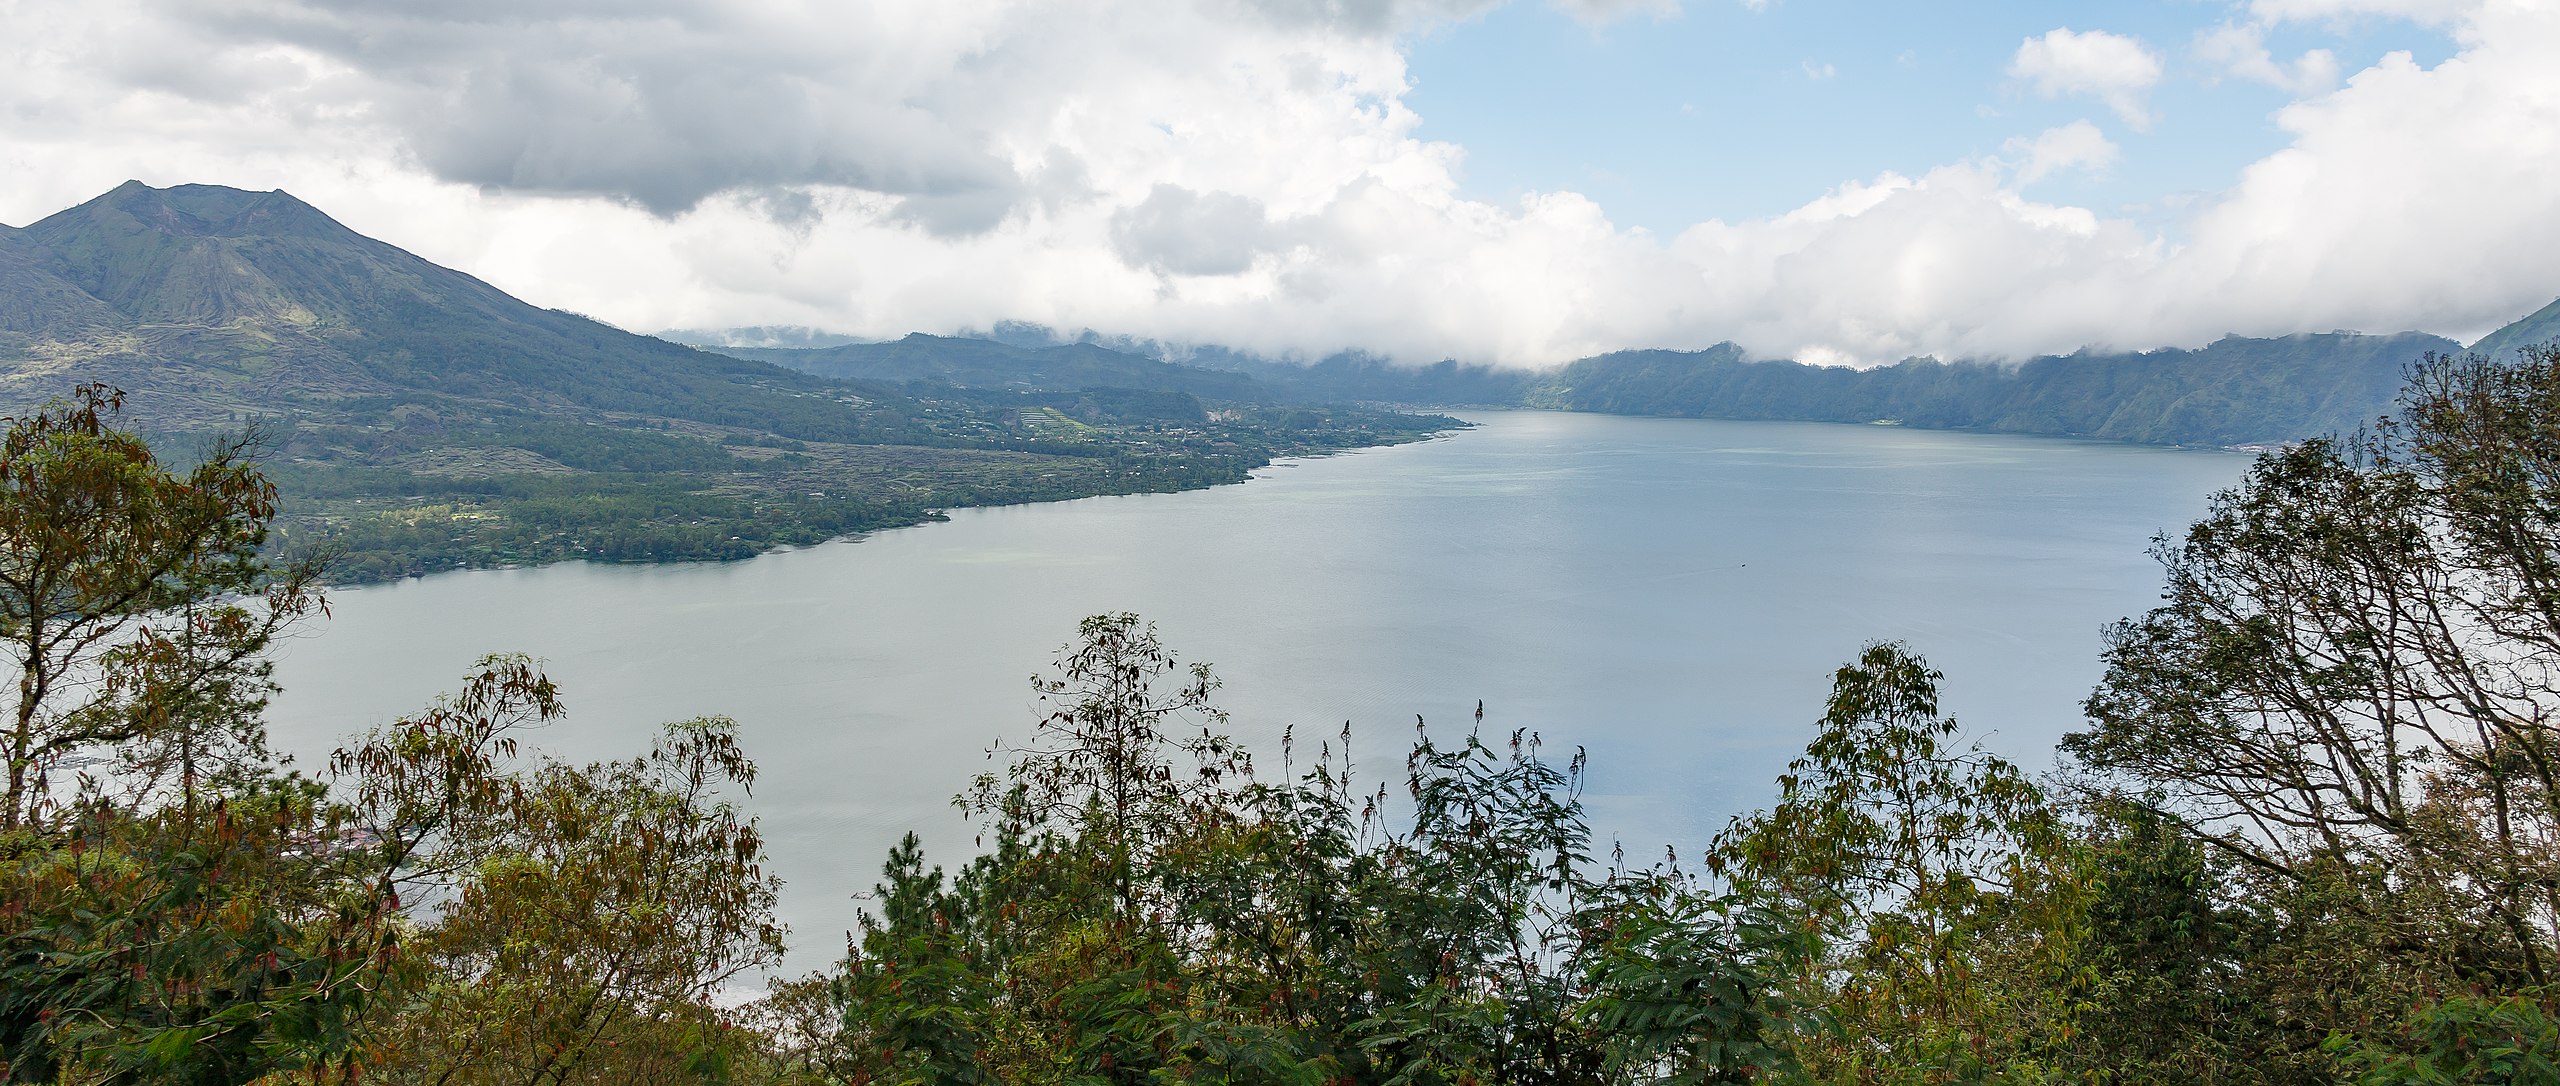 Путешествие к озеру Батур: уникальное путешествие на Бали